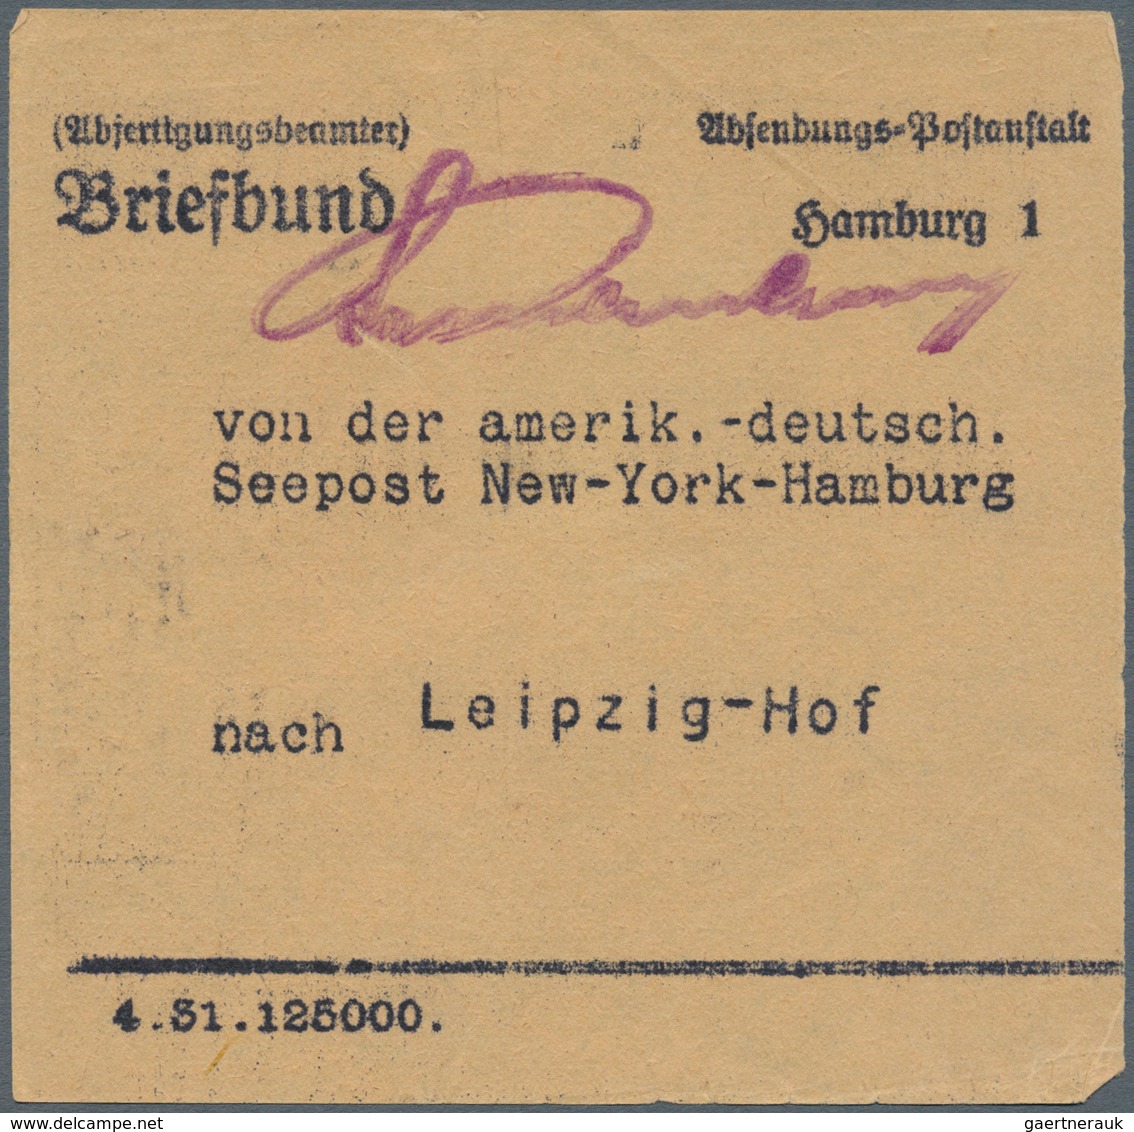 Deutsche Schiffspost im Ausland - Seepost: 1920/1945, Partie von über 80 Belegen mit vielen interess